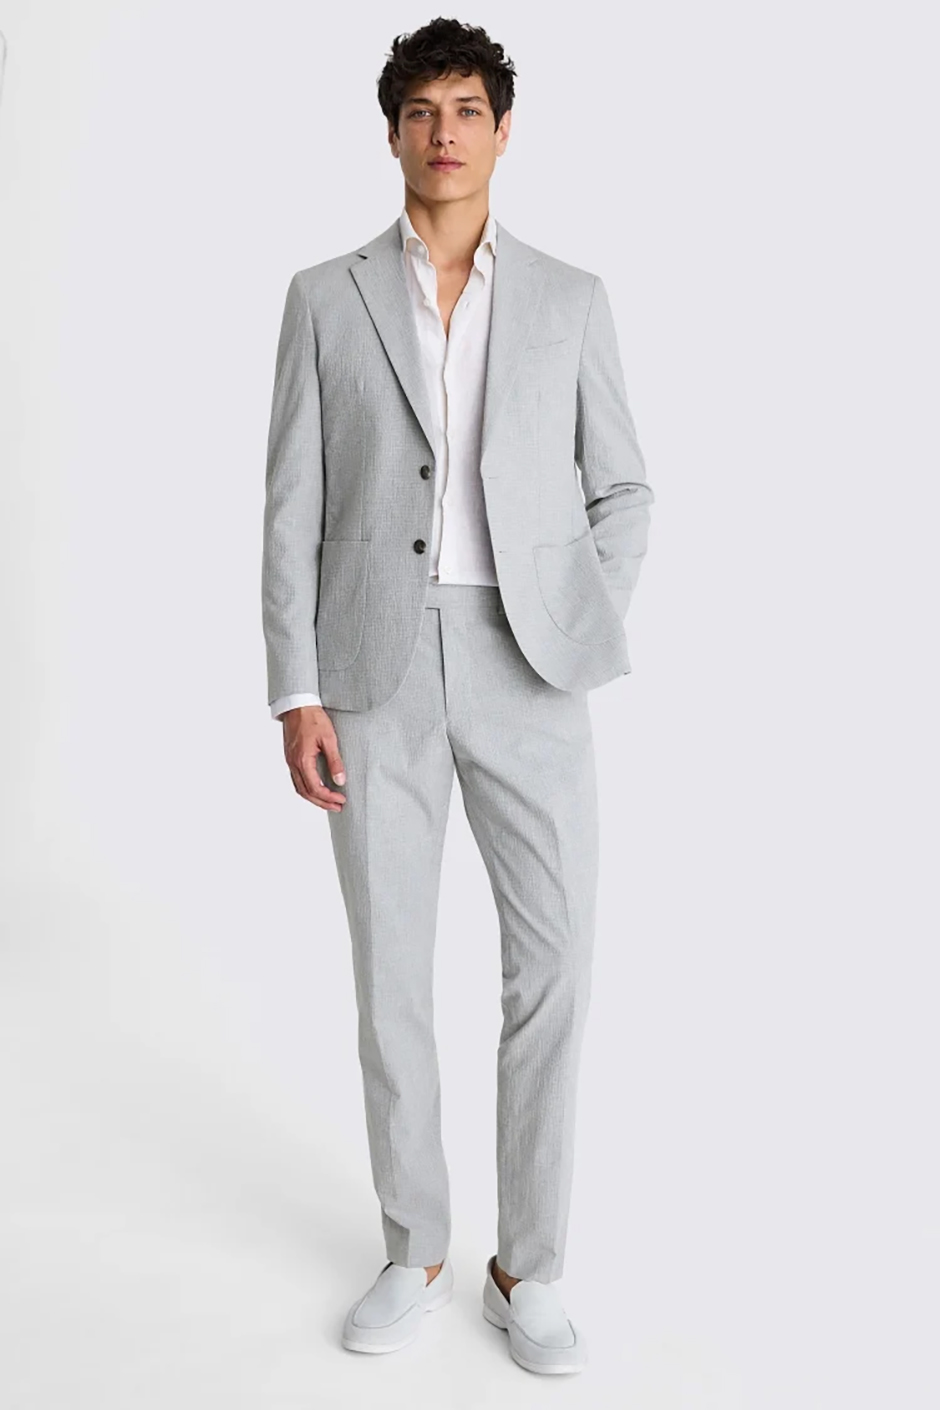 Slim fit grey groomsmen suit in a light grey marl tone for weddings 